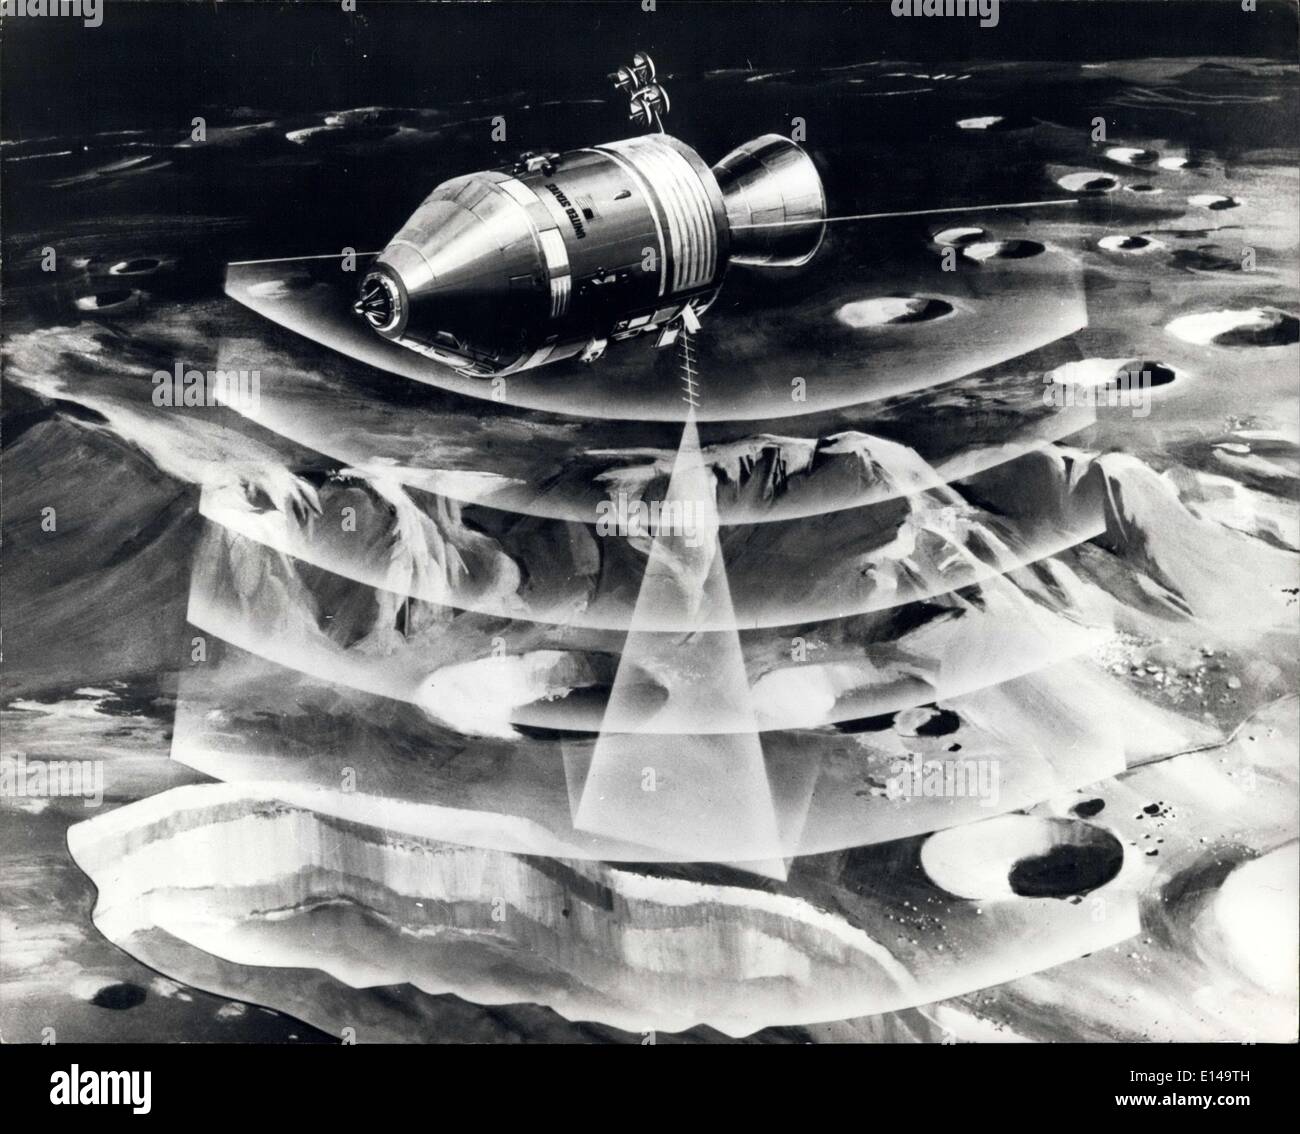 Apr. 17, 2012 - Lunar 'Divining asta'': Concetto illustra come fasci elettronici di Apollo 17's lunar suonando il sistema sonda luna giù per tre quarti di miglio - dall orbita lunare di aiuto nello sviluppo di subsurface mappa geologica di individuare tali caratteristiche come al di sotto della superficie metallica di depositi e l'acqua. Prototipo di lunar 'Divining asta' sistema, sviluppato dalla North American Rockwell (NR) Spazio, divisione, il volo è stato testato su selezionato siti di massa dagli ingegneri a livello nazionale Aeronautica e spazio dell Amministrazione di veicoli spaziali con equipaggio Center a Houston, Texas. Foto Stock